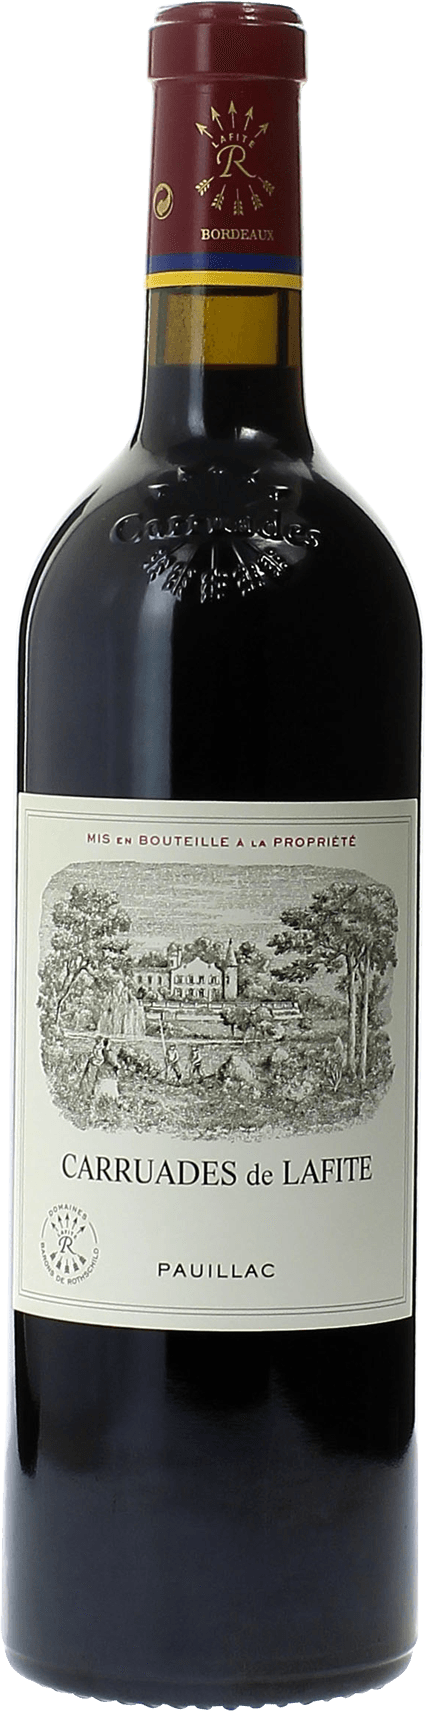 Carruades de lafite 1992 2me vin de LAFITE ROTHSCHILD Pauillac, Bordeaux rouge